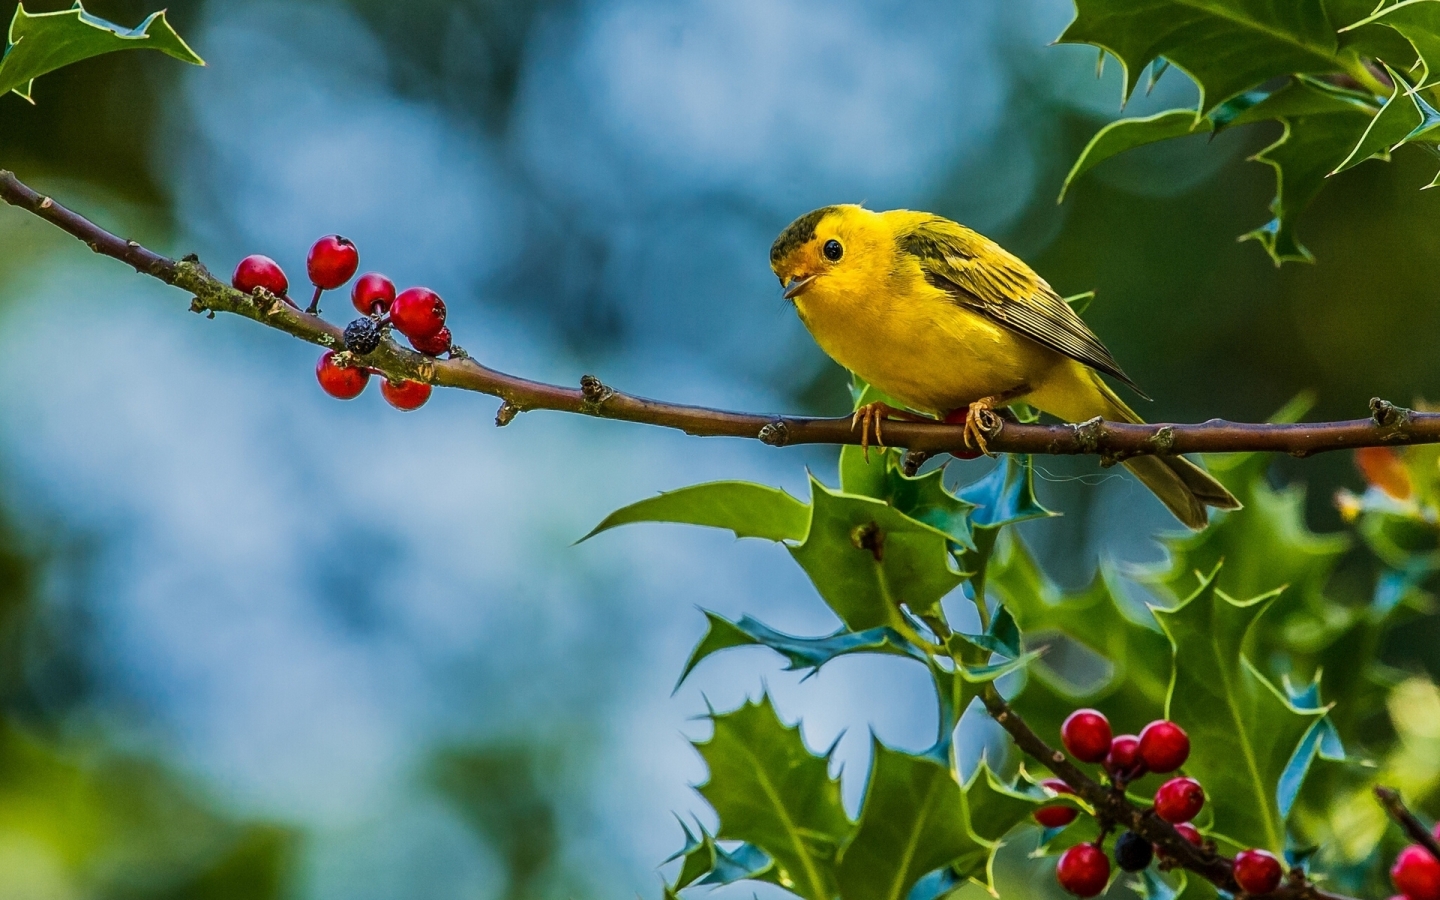 Cute Little Yellow Bird for 1440 x 900 widescreen resolution